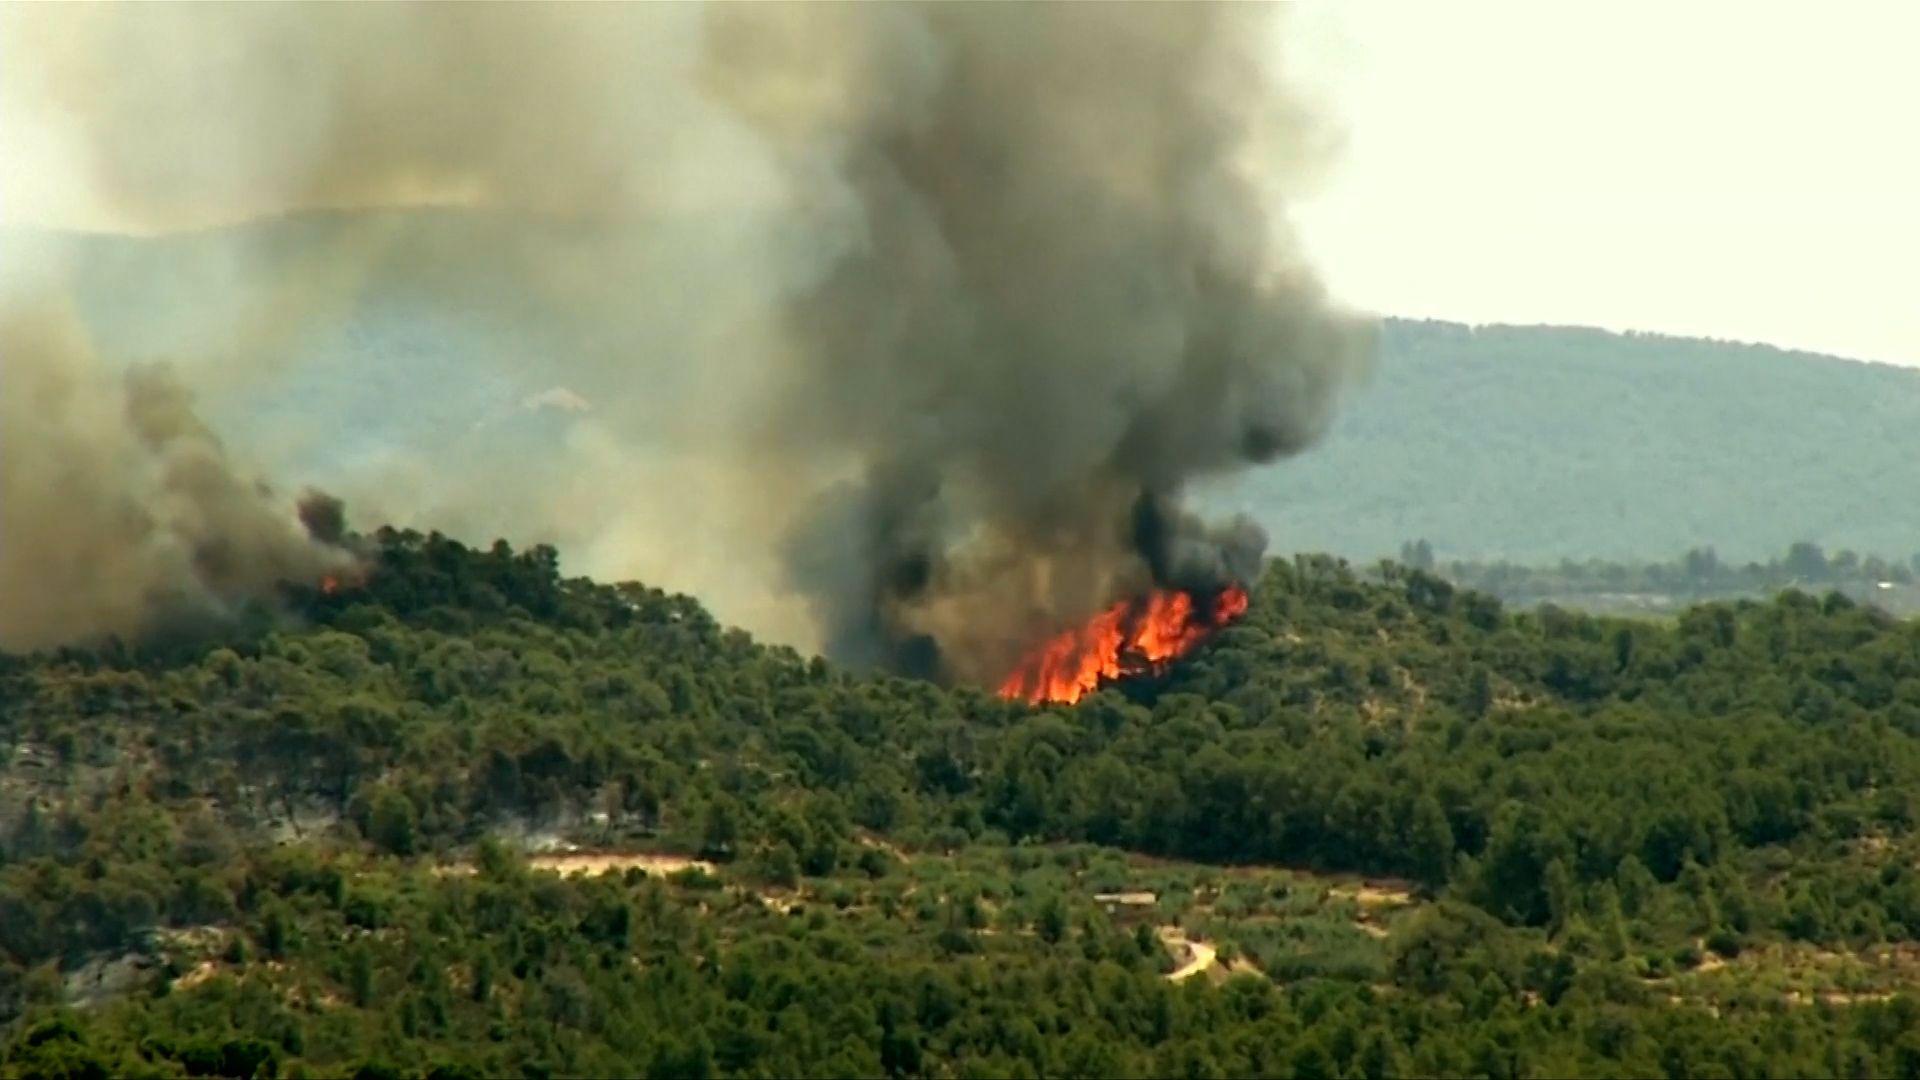 Vague de chaleur en Europe.  L’Espagne est en proie à de vastes incendies de forêt, deux personnes meurent en Italie